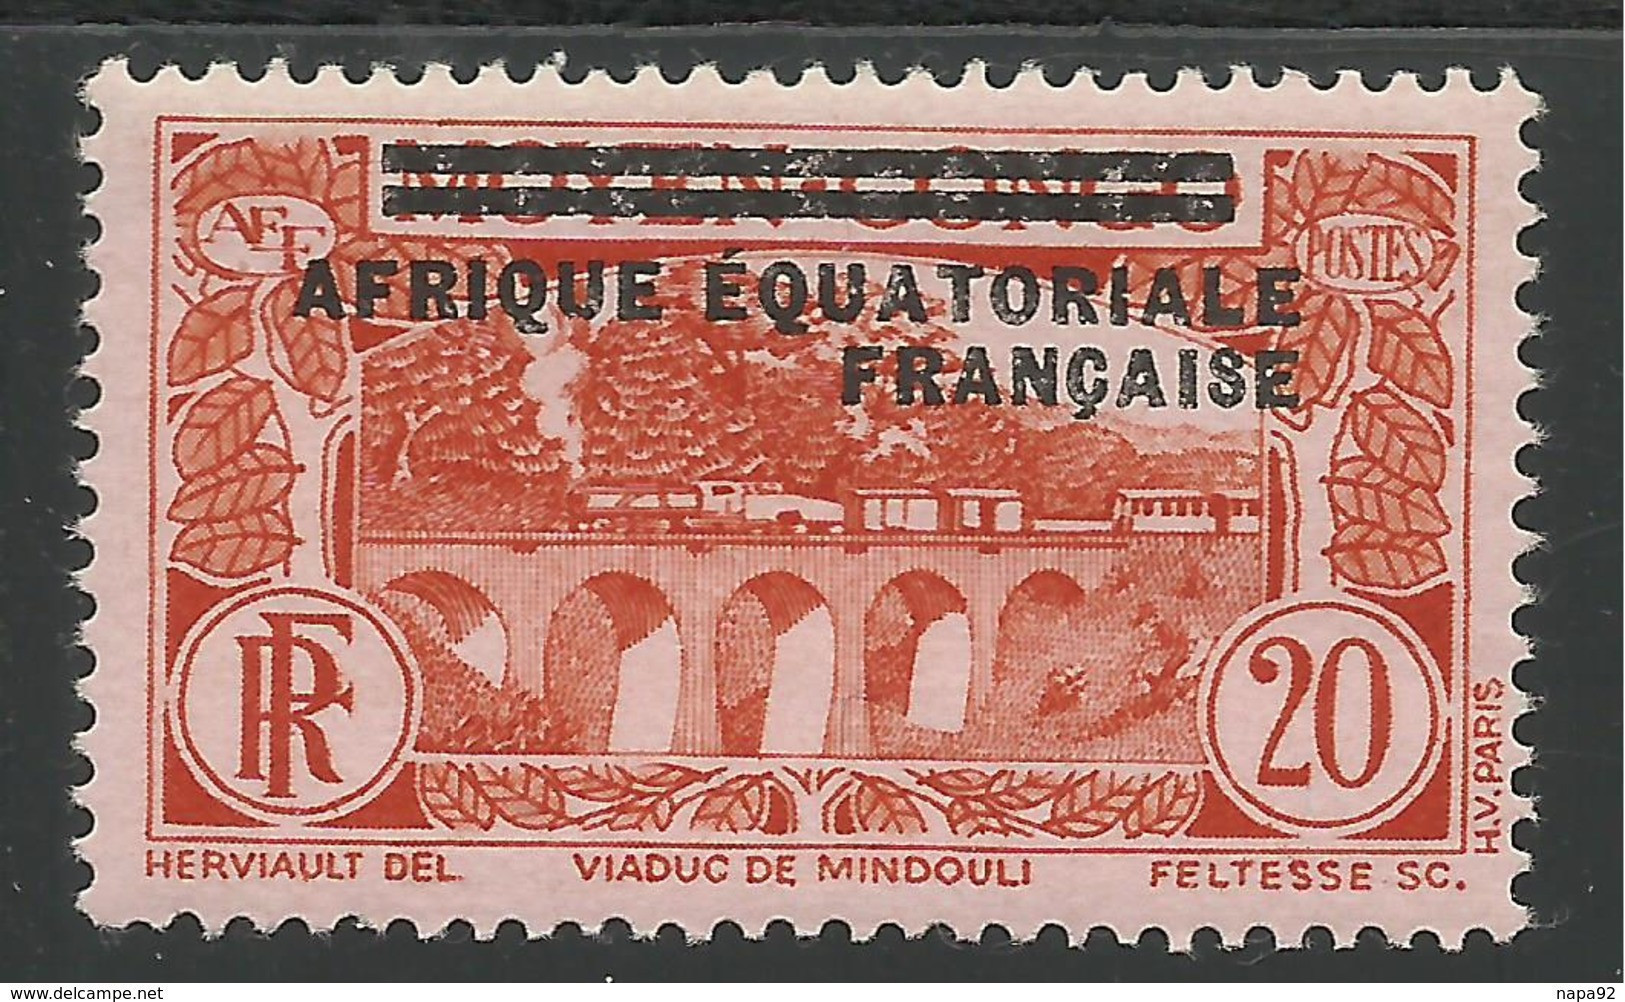 AFRIQUE EQUATORIALE FRANCAISE - AEF - A.E.F. - 1936 - YT 7** - Nuevos